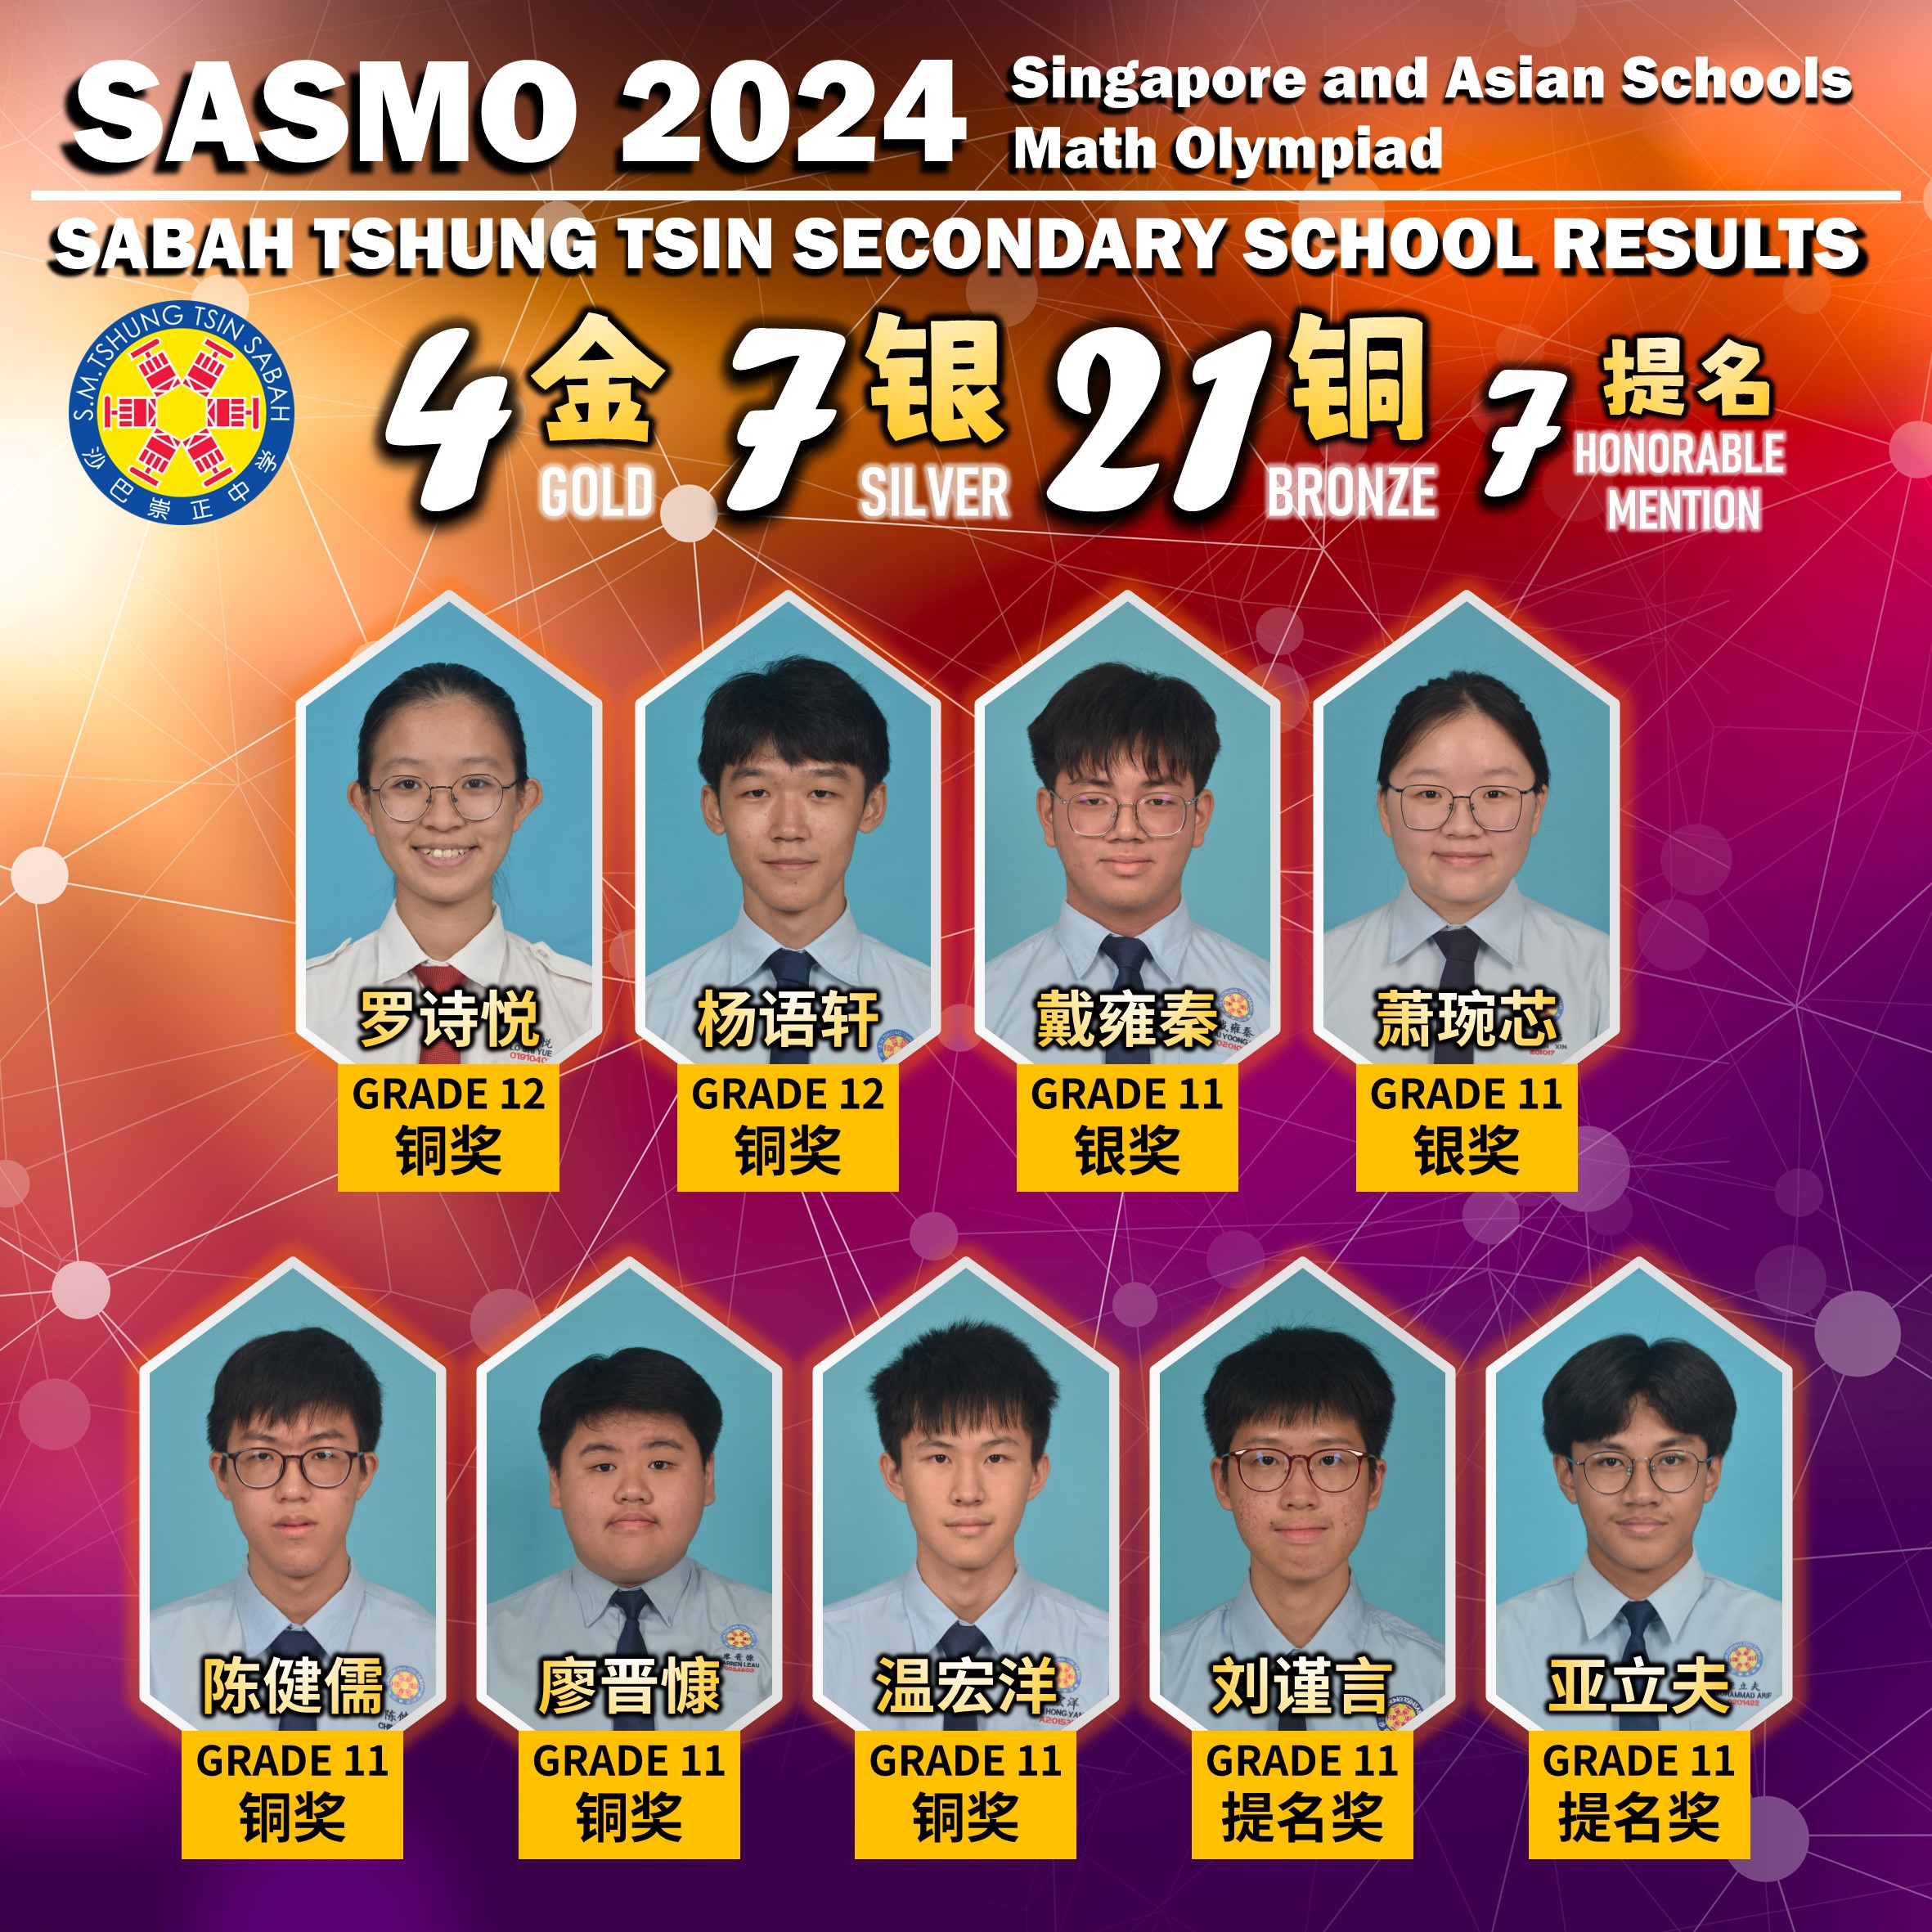 第19届 SASMO (Singapore and Asian Schools Math Olympiad)